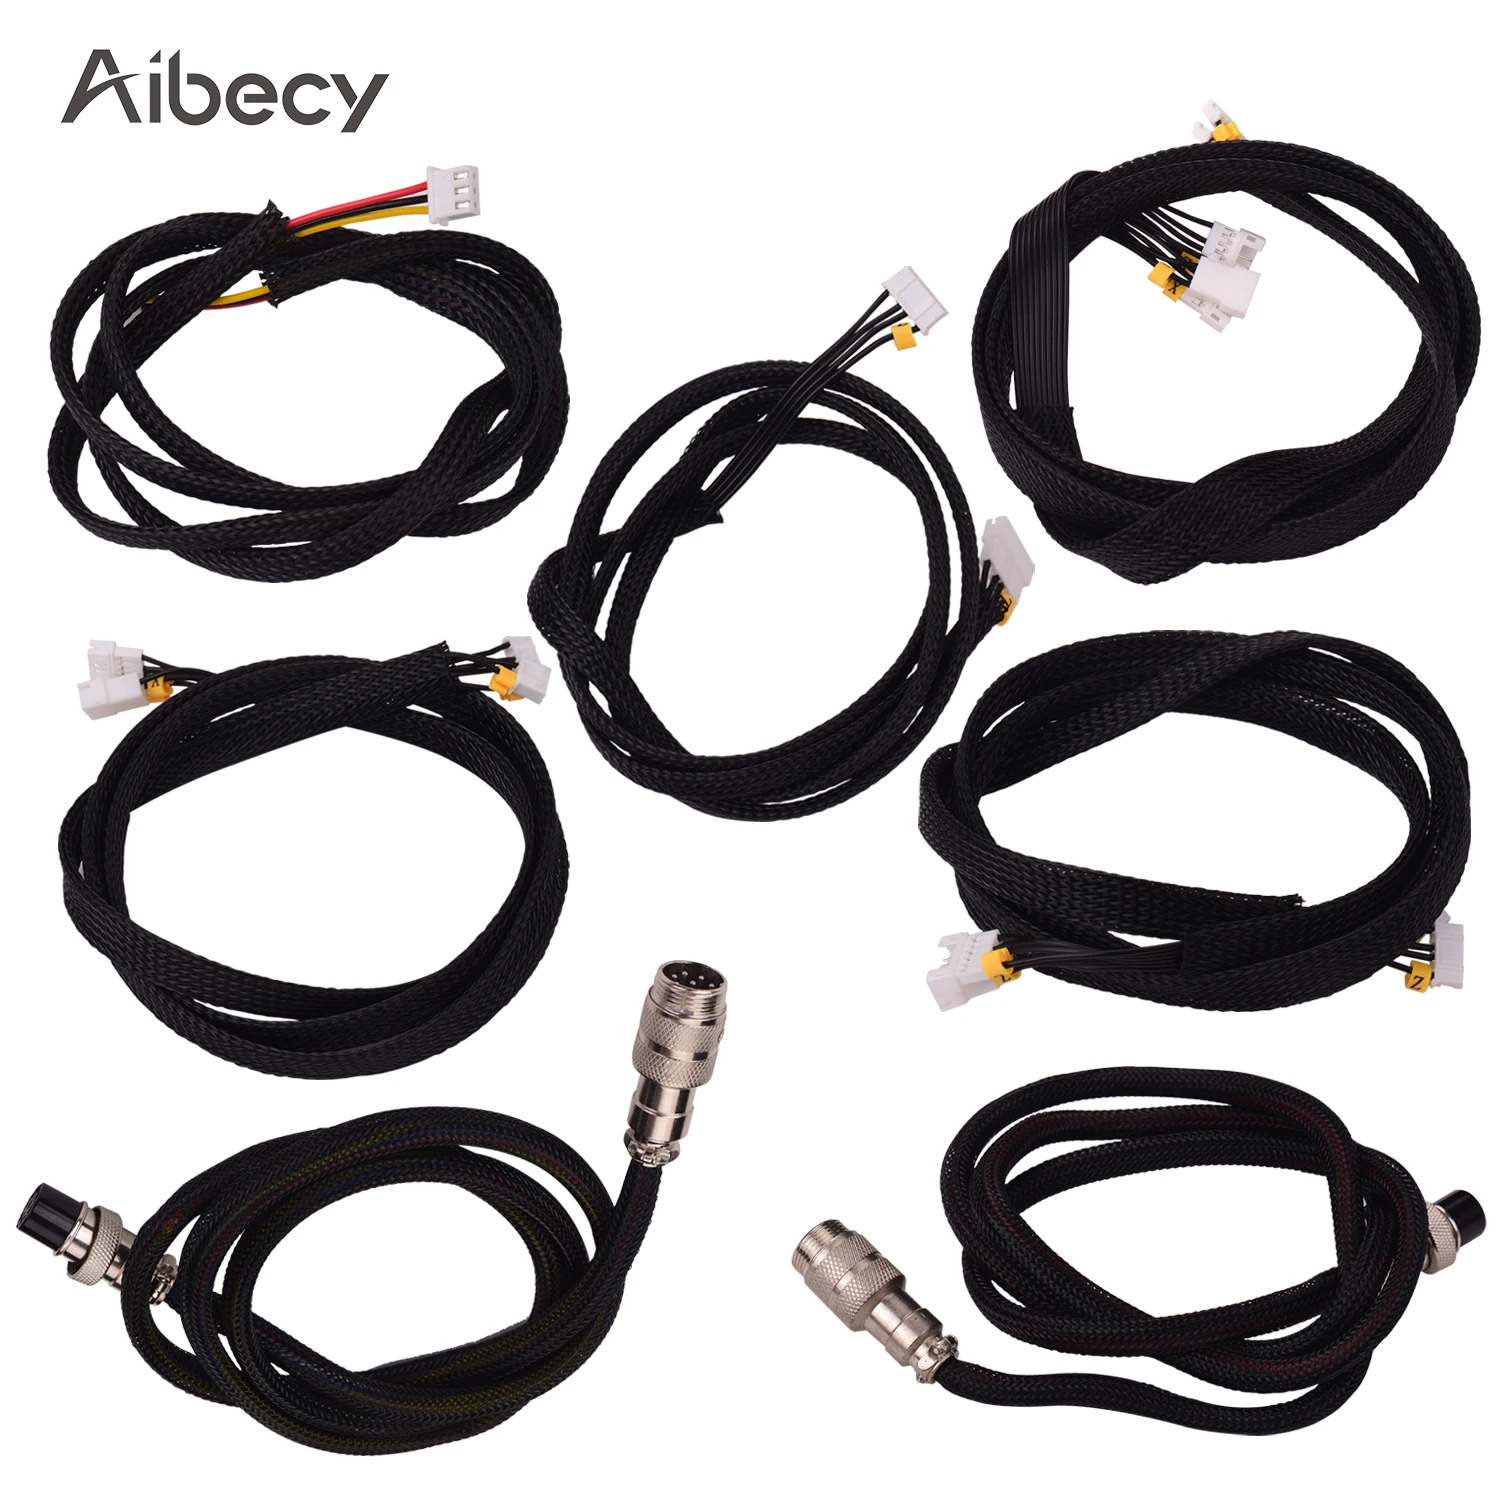 Aibecy аксессуары для 3d принтеров, комплект удлинительных кабелей длиной 1 м/3,28 фута, совместимых с Creality CR-10/CR-10S/CR-10S4/CR-10S5